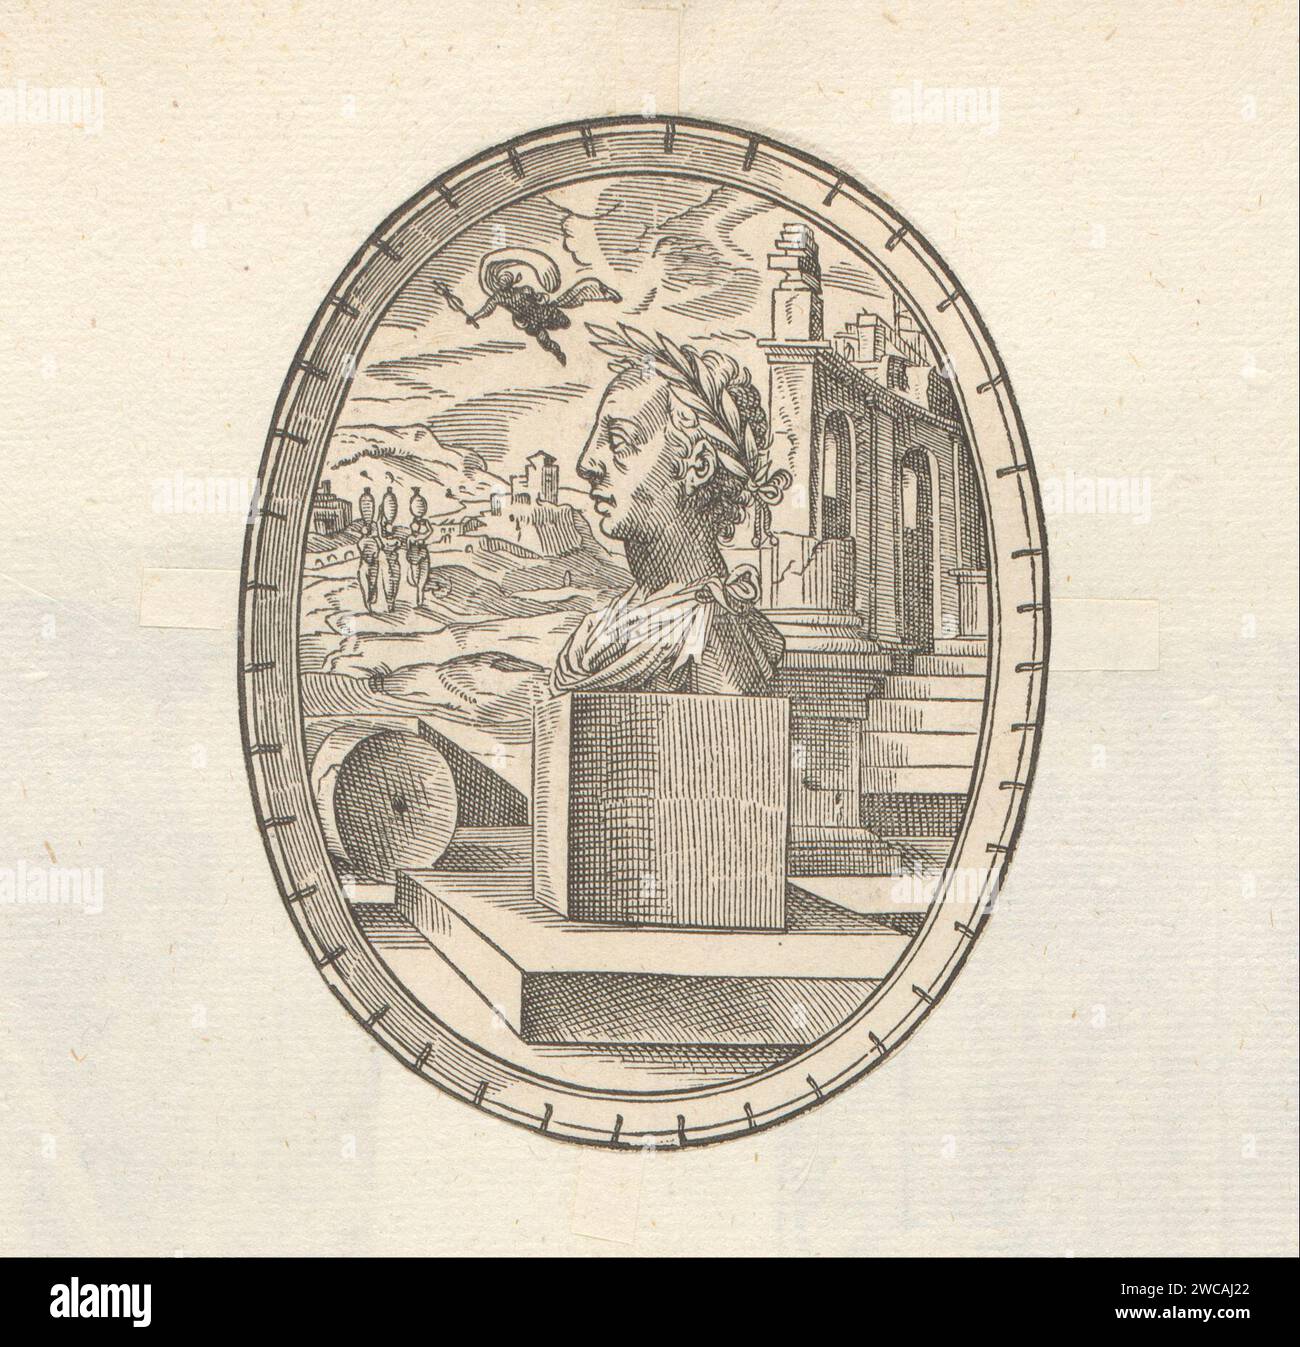 Portrait à un buste de Bernhard Jobin, Anonyme, d'après Tobias Stimmer, 1549 - 1575 imprimer Imprimer fait partie d'un album. personnages historiques de papier. editing, éditeur (+ portrait d'érudit, scientifique). dispositif (marque de commerce de l'imprimeur ou de l'éditeur) Banque D'Images